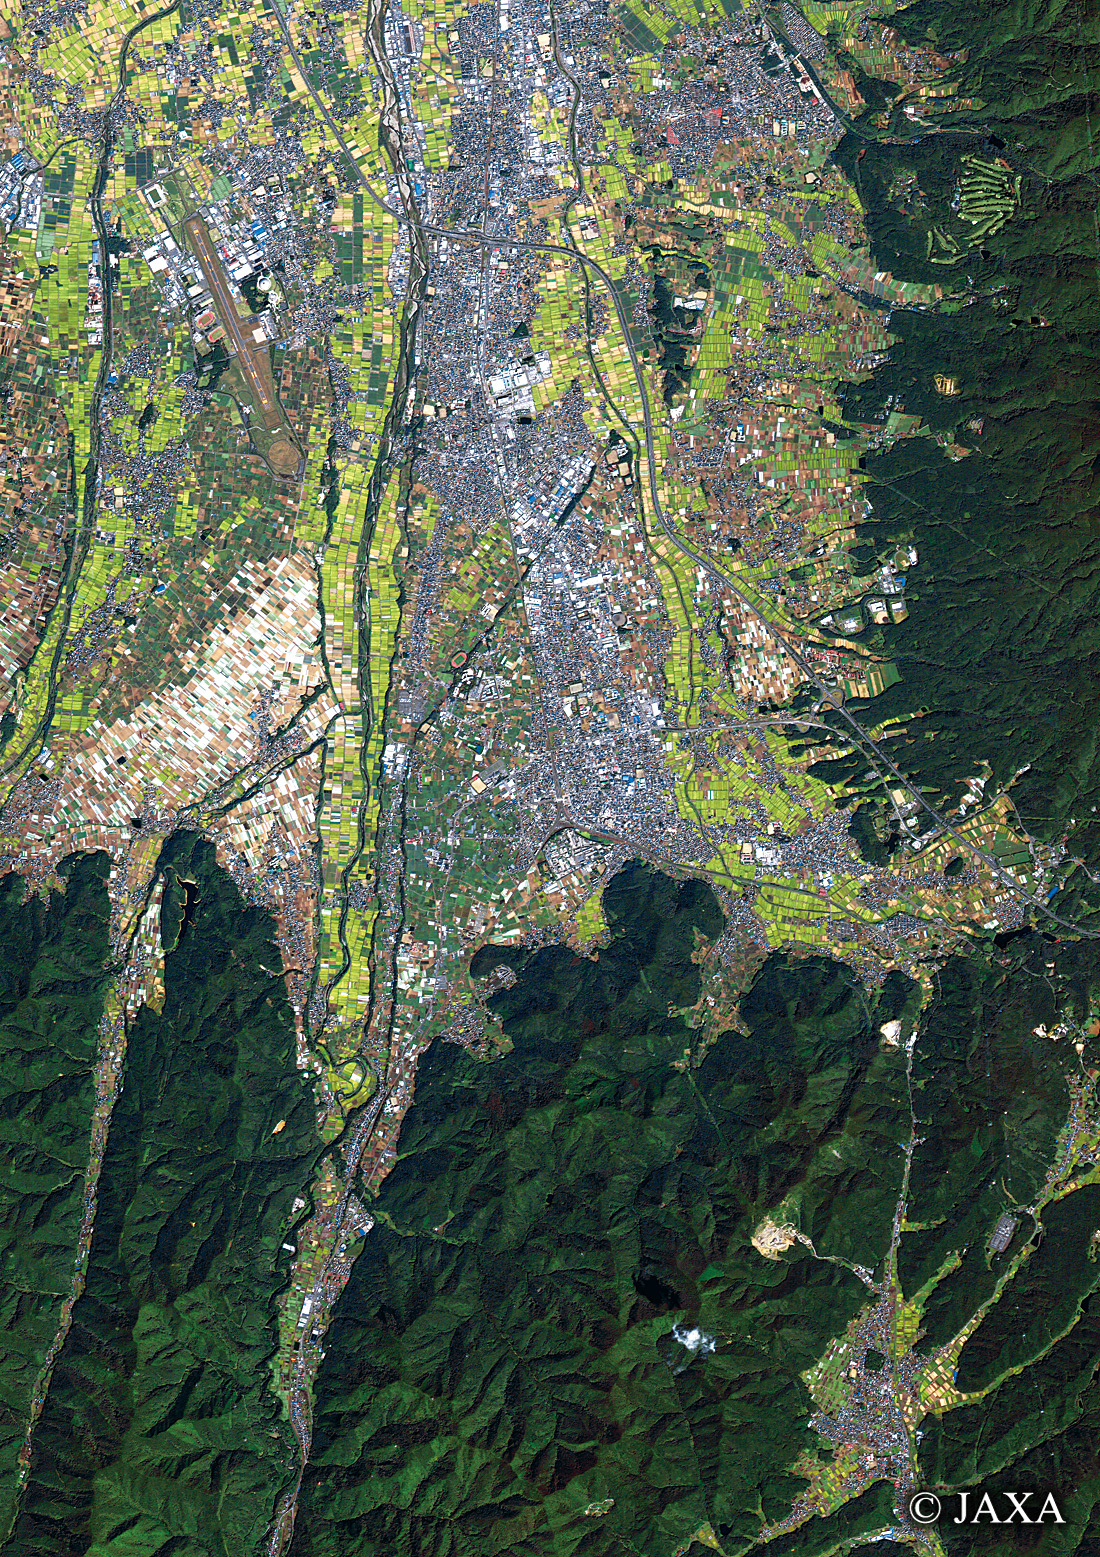 だいちから見た日本の都市 塩尻市:衛星画像